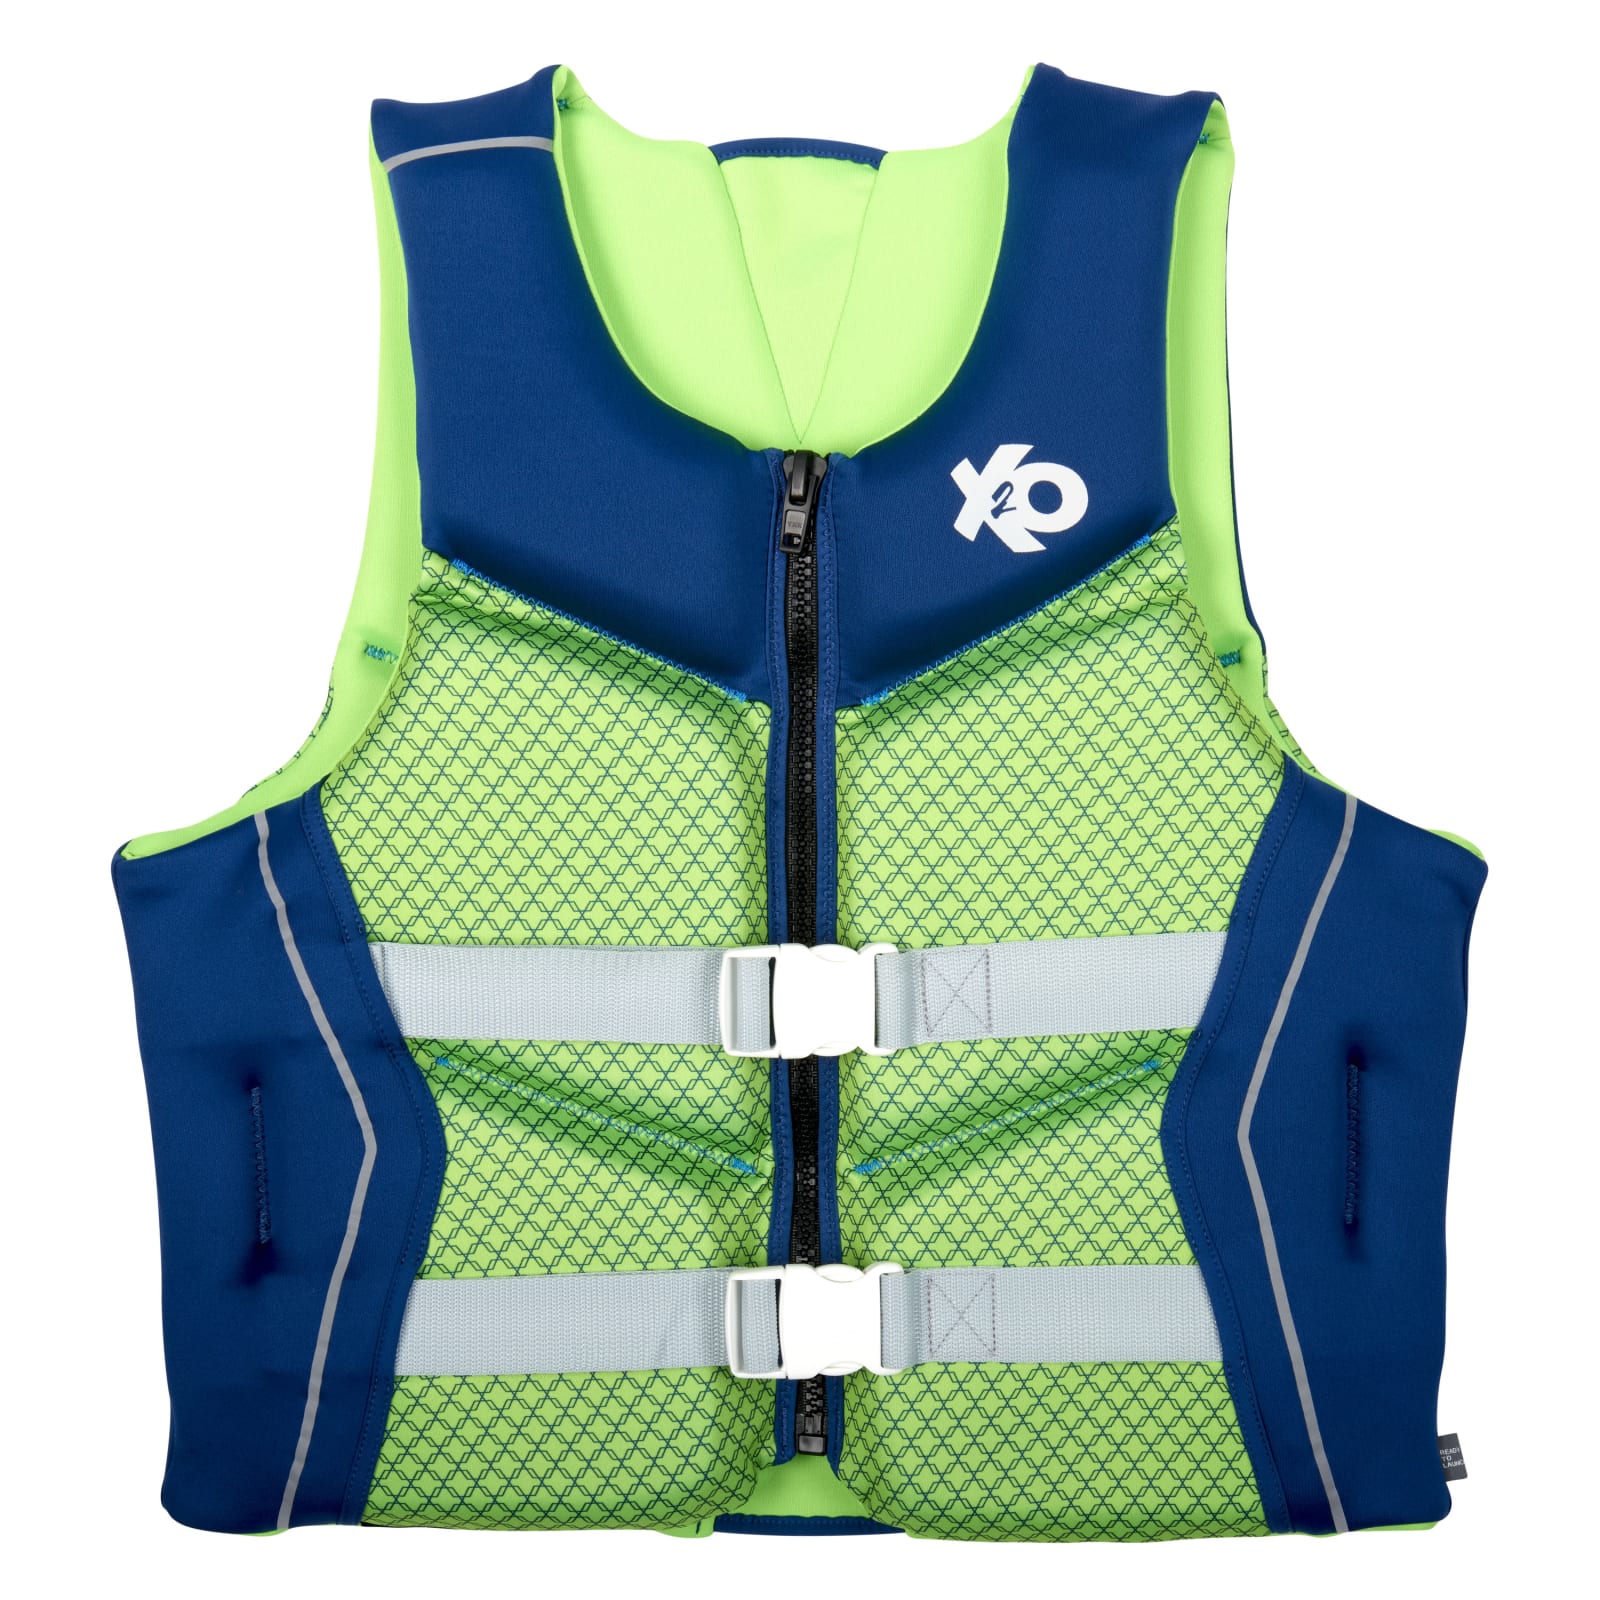 Men's Green/Navy Comfort Wave Vest by X20 at Fleet Farm